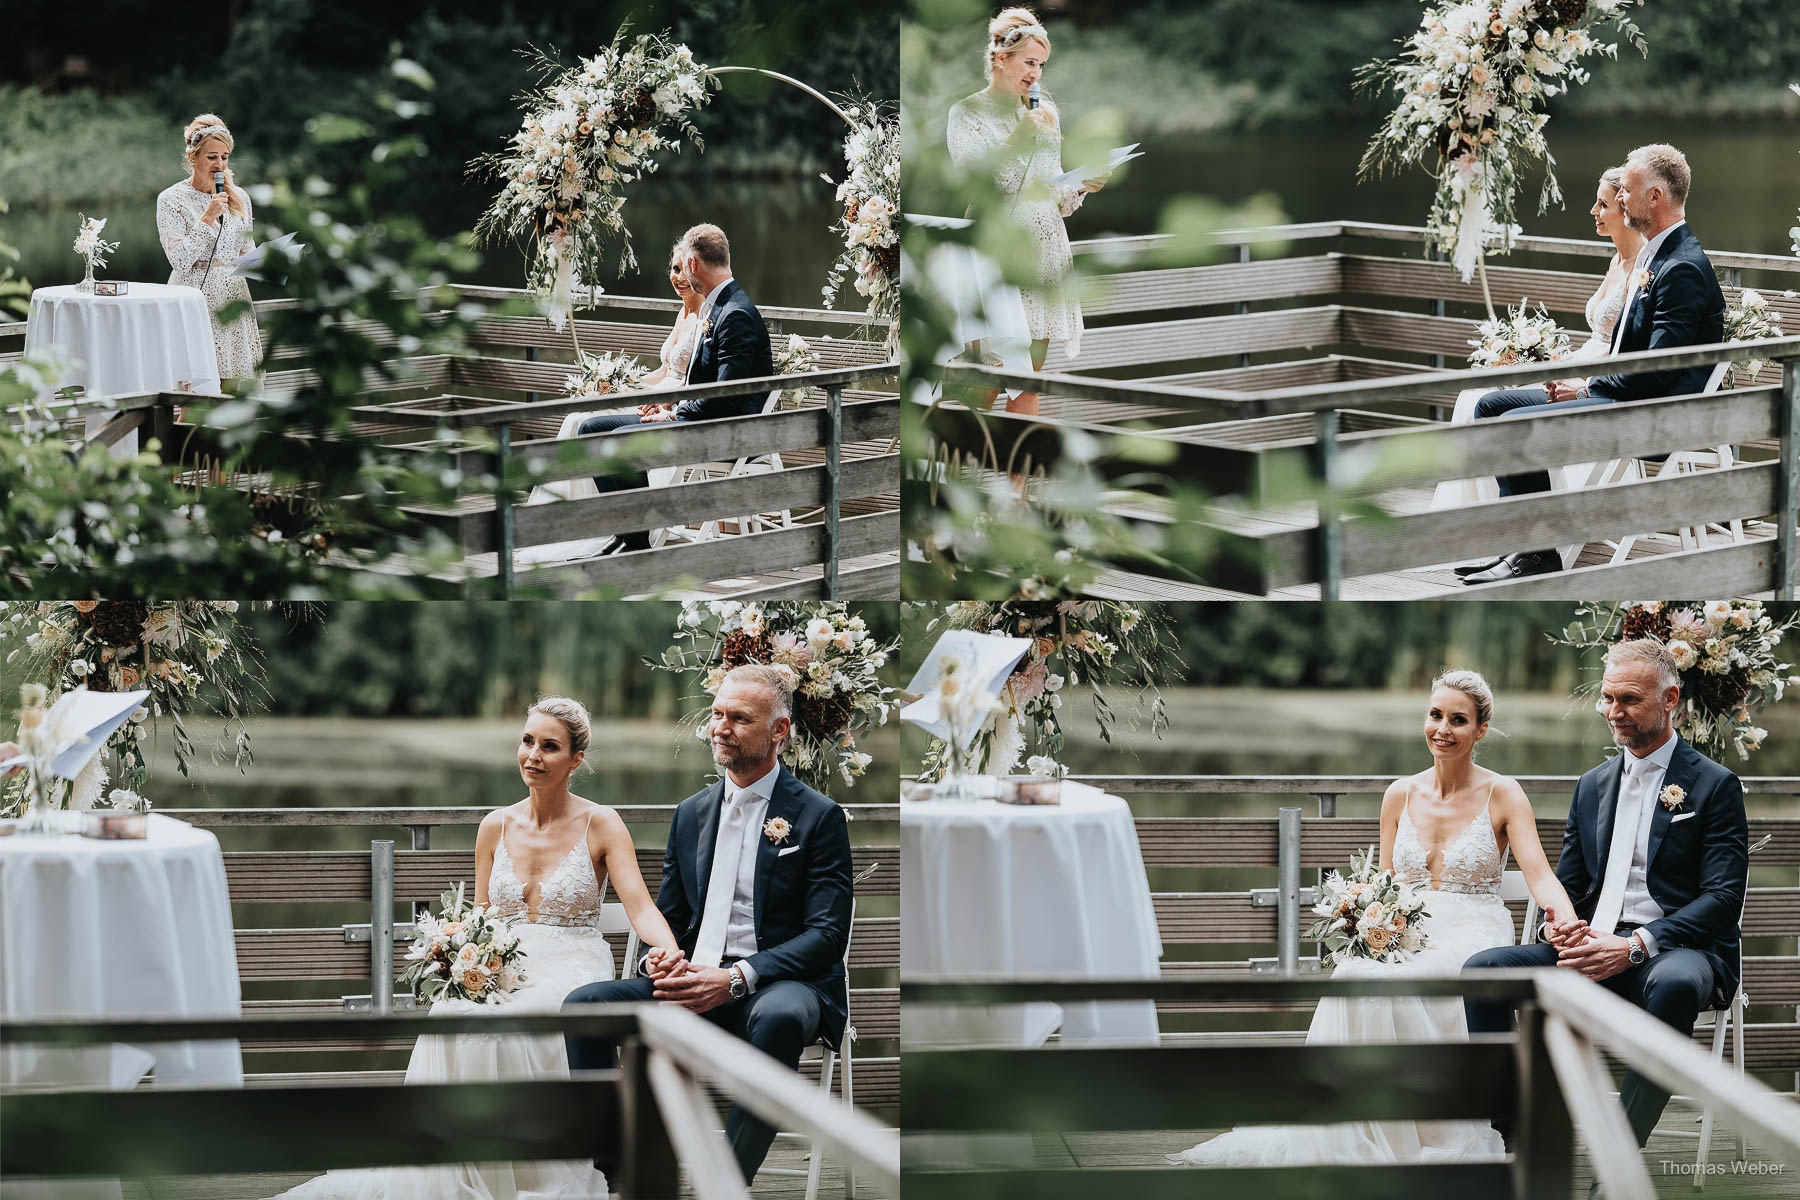 Freie Trauung am Mühlensee am Nordenholzer Hof in Hude, Hochzeitsfotograf Thomas Weber